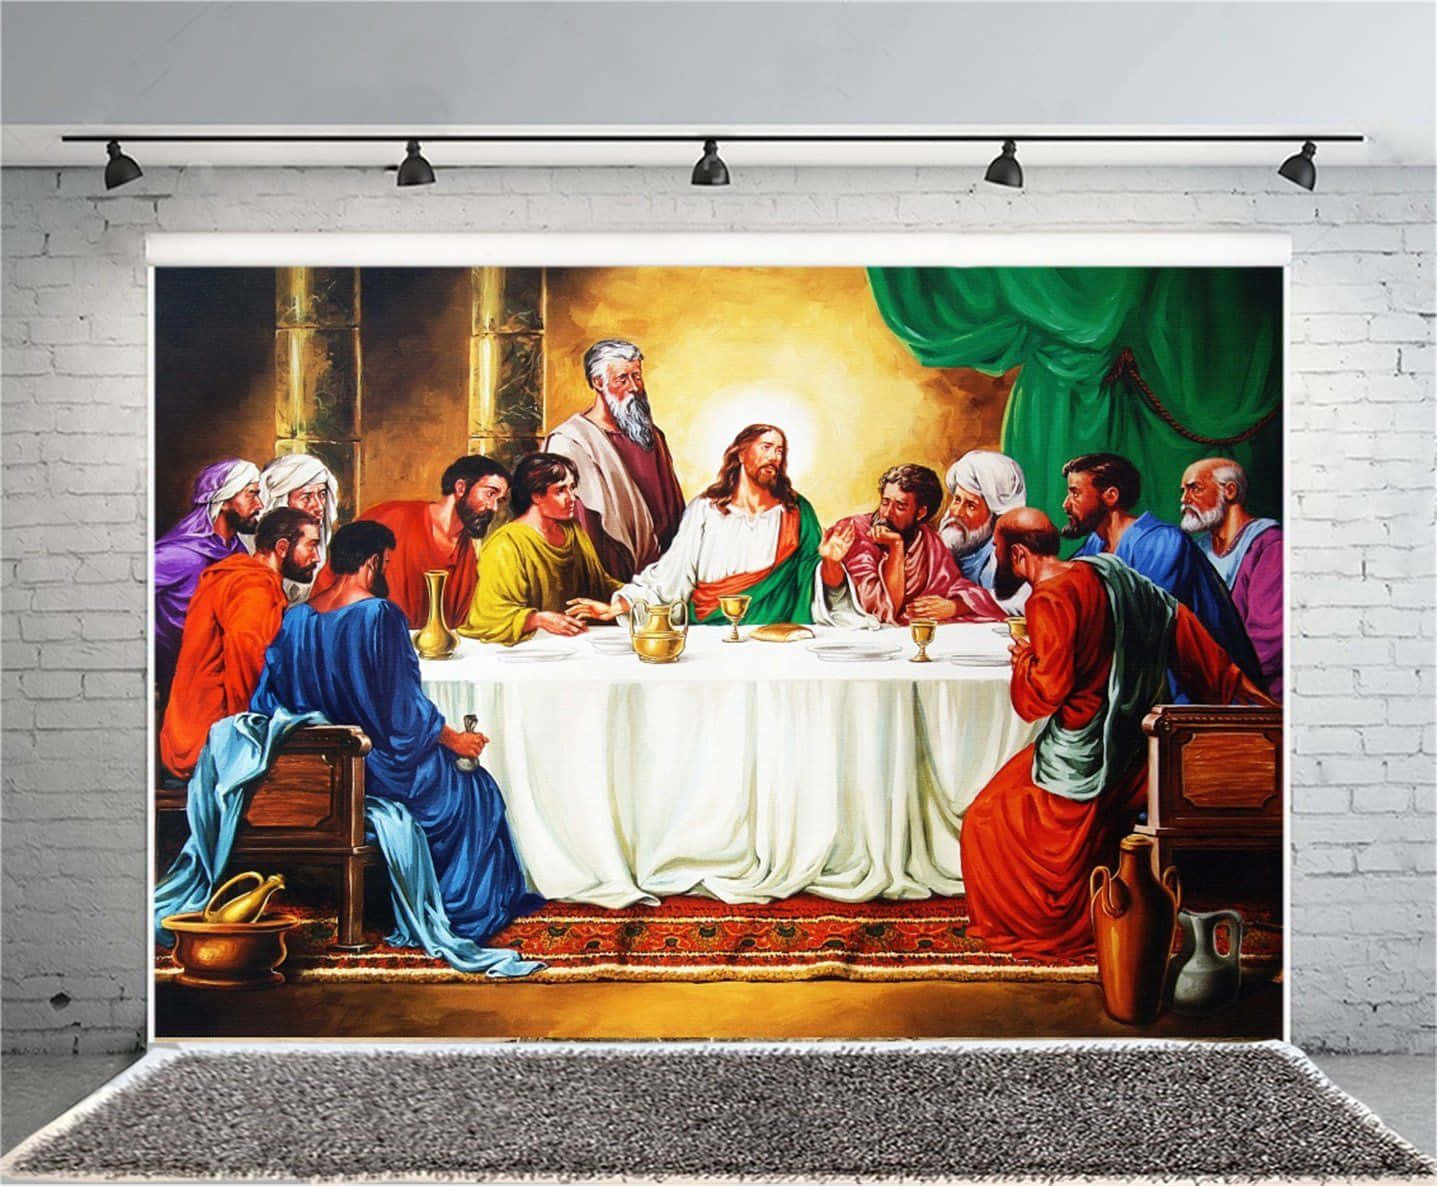 Caption: The Last Supper - Leonardo da Vinci's Masterpiece Wallpaper